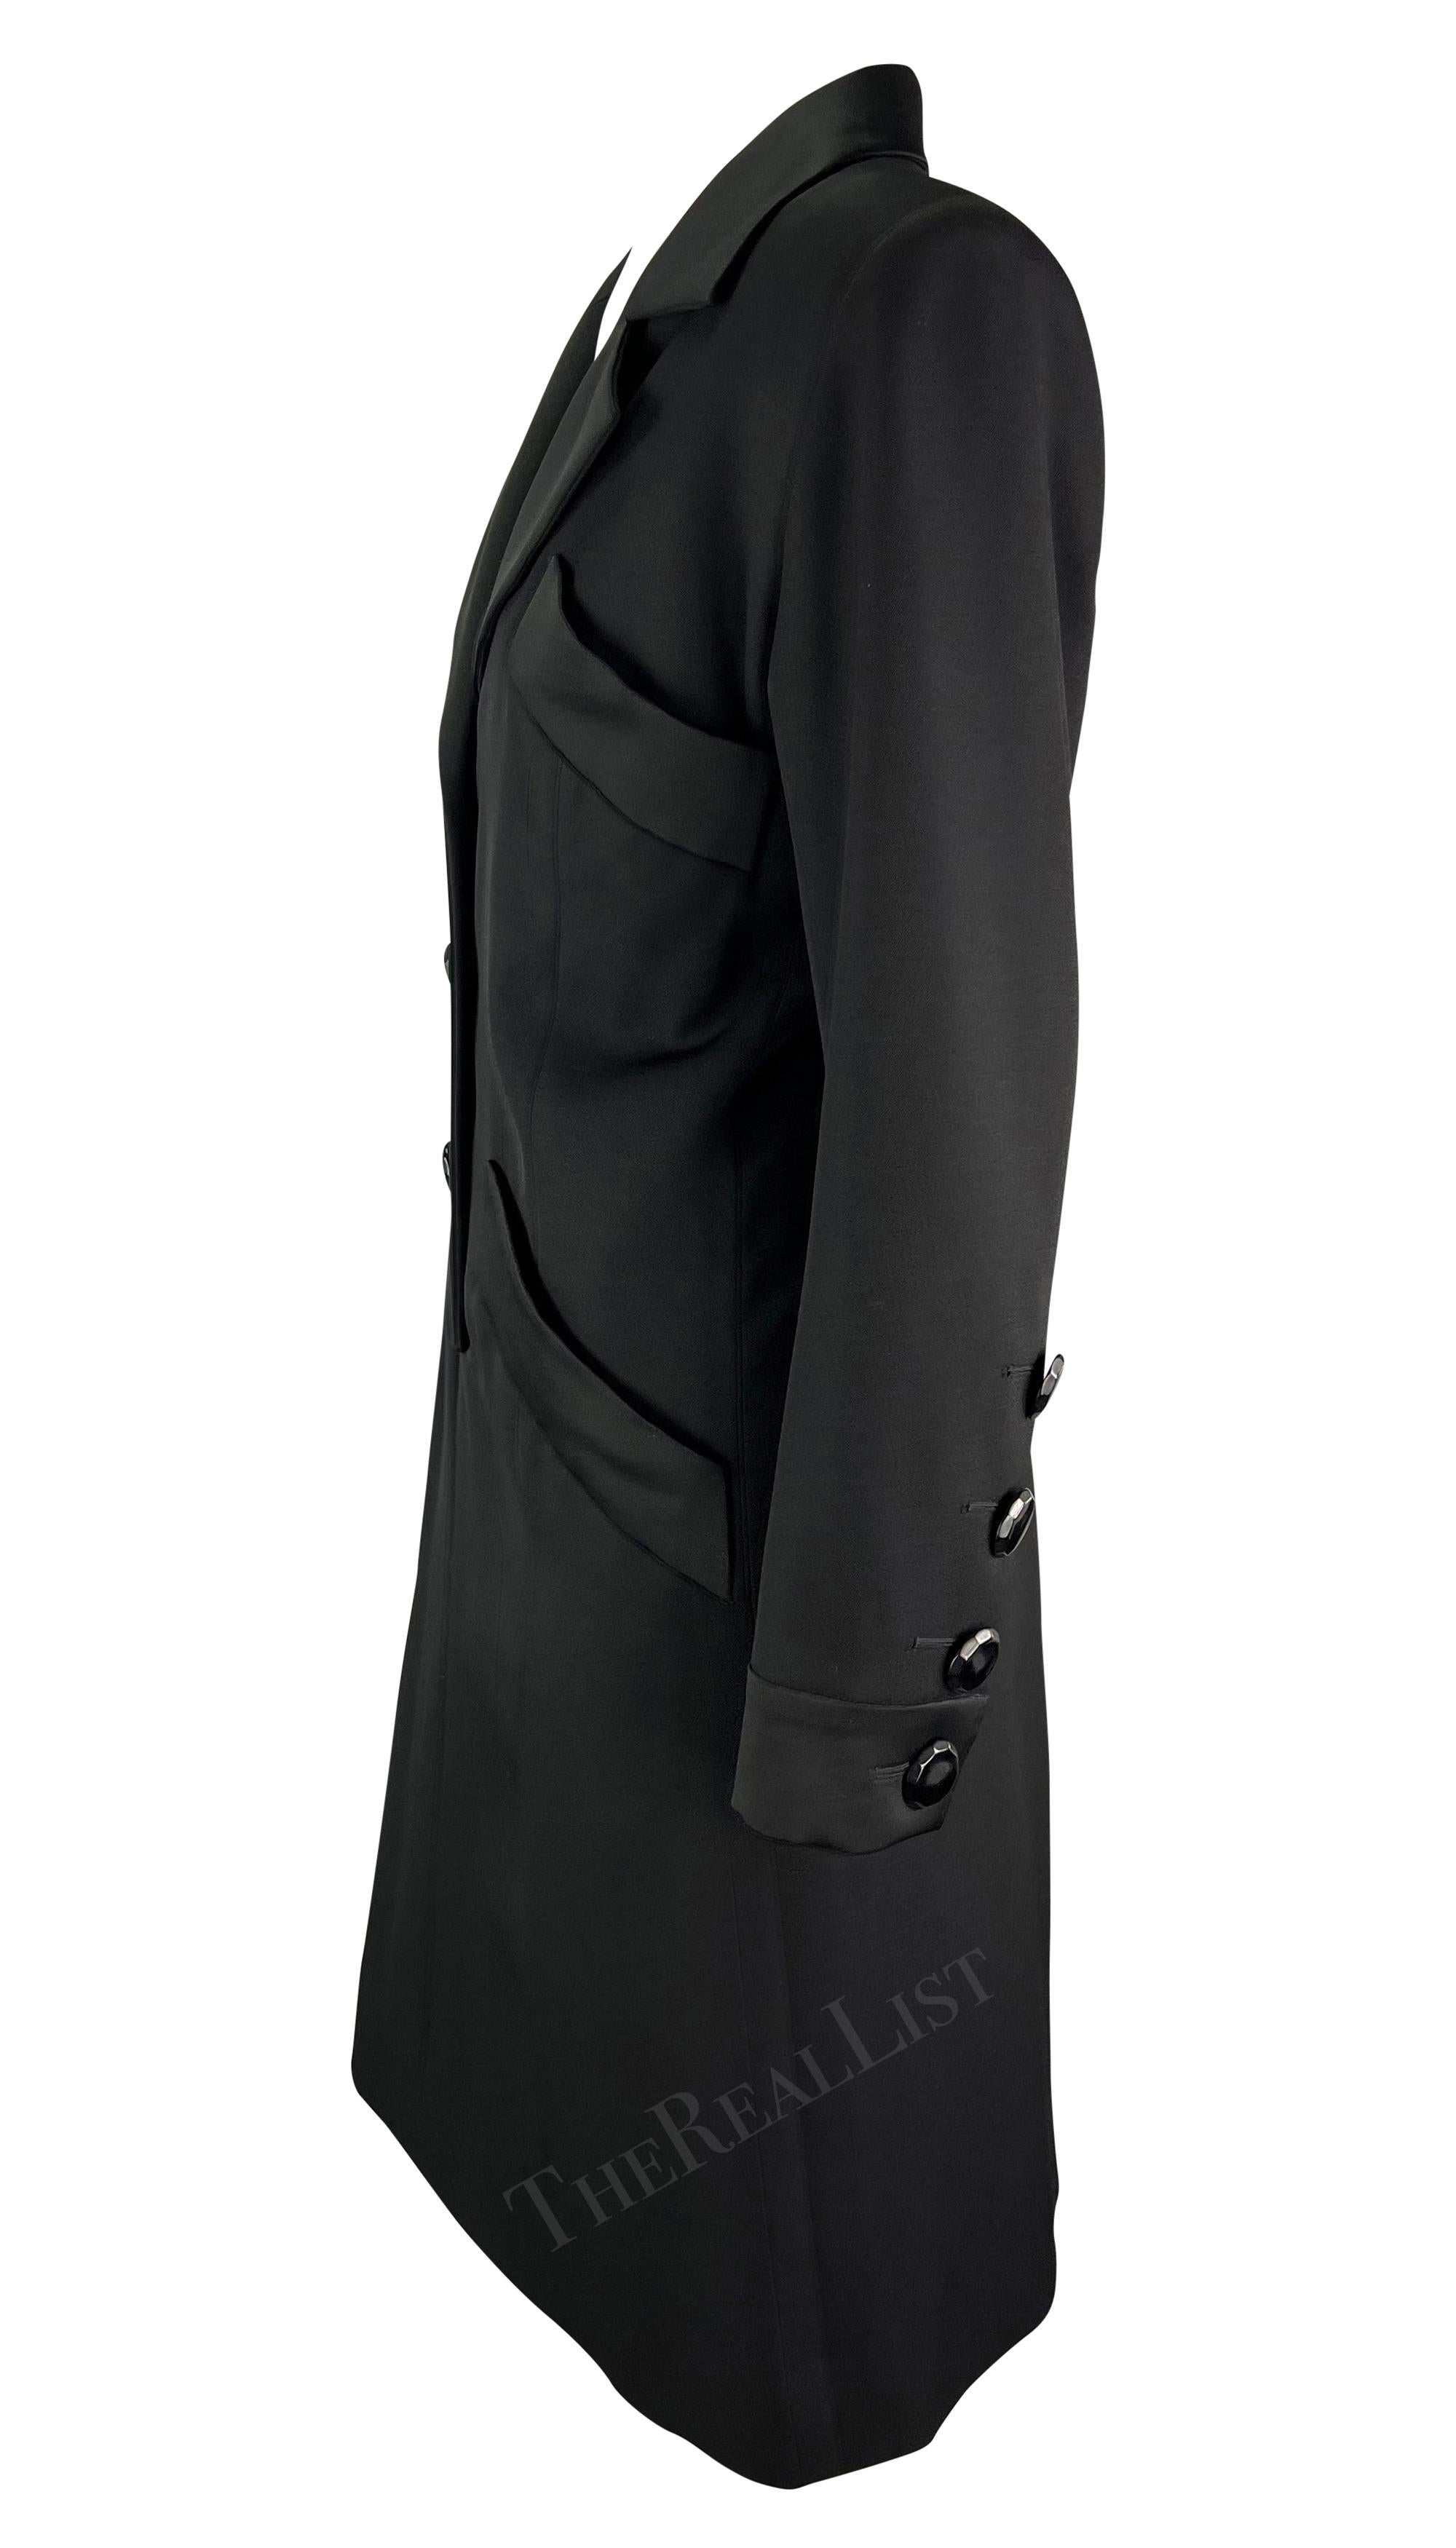 F/W 1993 Yves Saint Laurent Runway Black Tuxedo Shirt Dress  For Sale 1